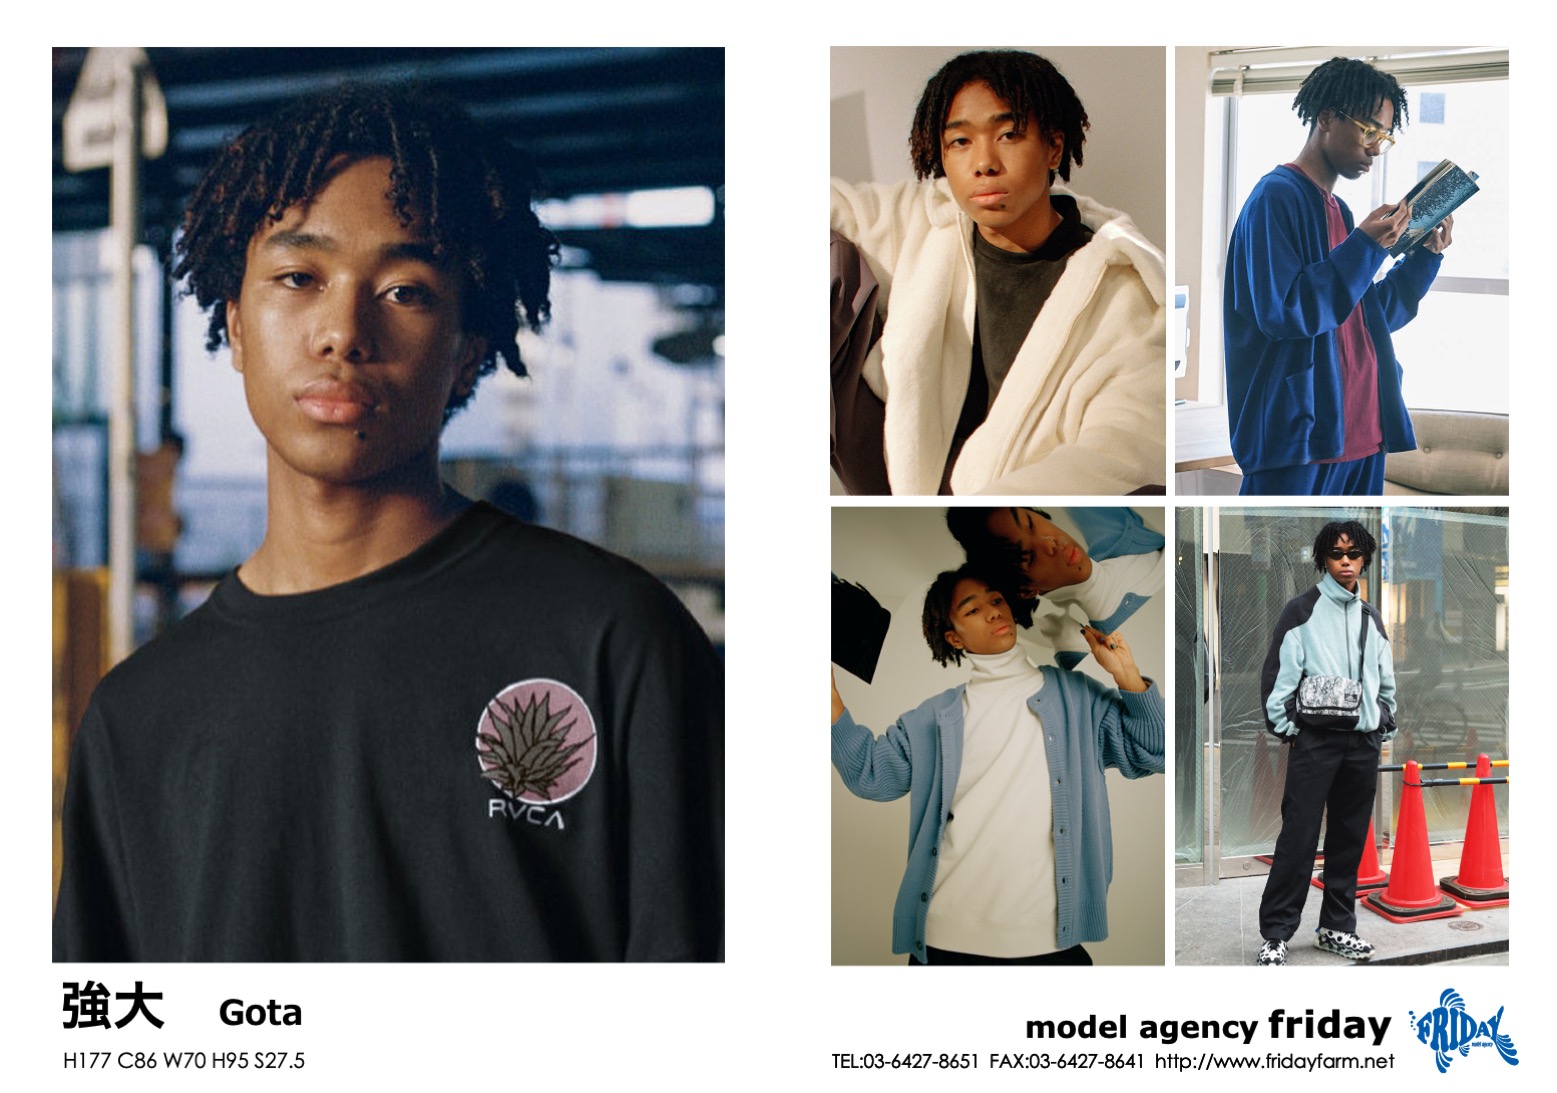 強大 - Gota | model agency friday